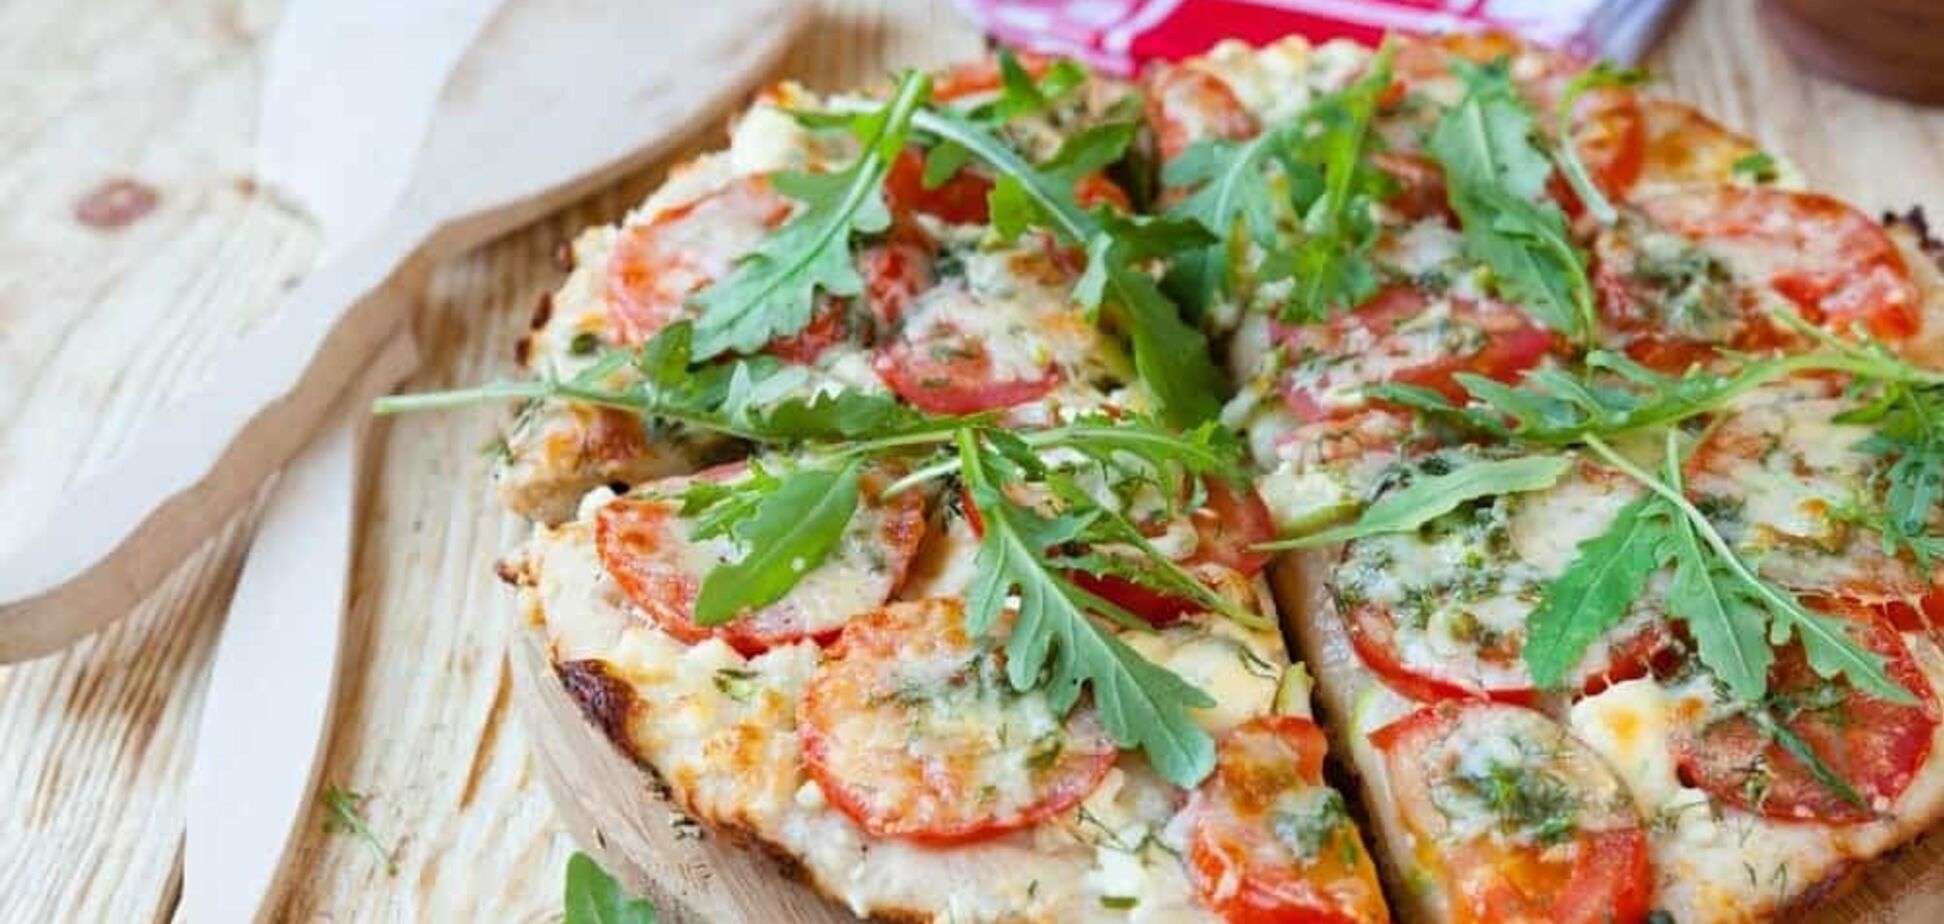 Елементарна піца без тіста: готується з лаваша